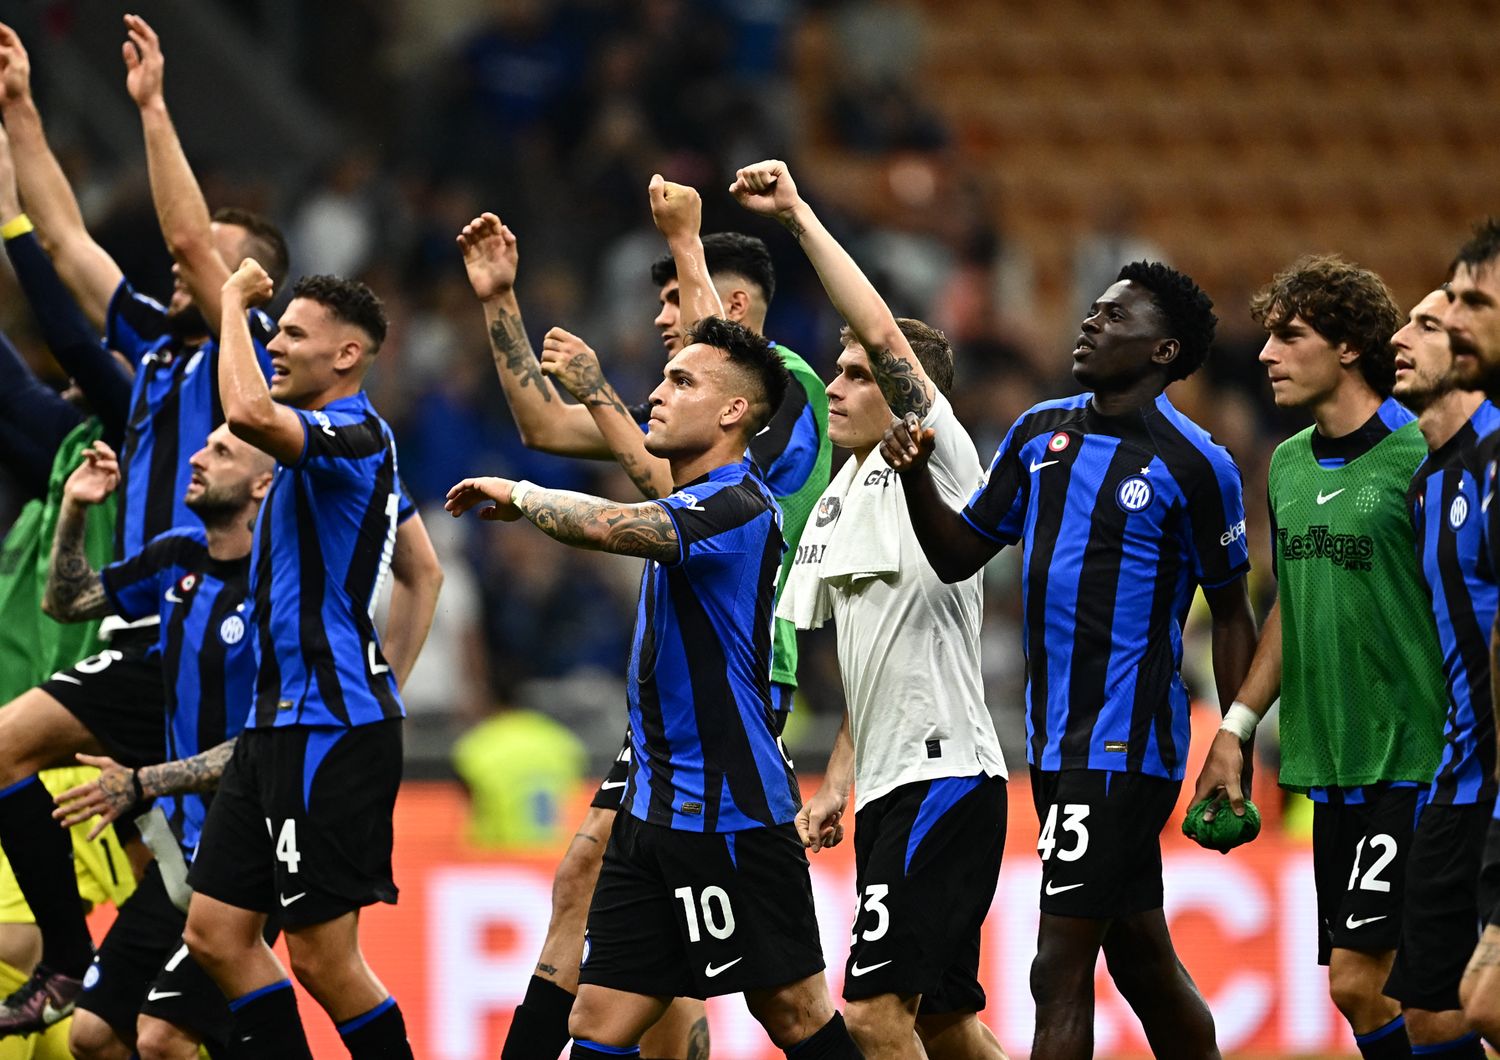 Inter festeggia la vittoria con l'Atalanta